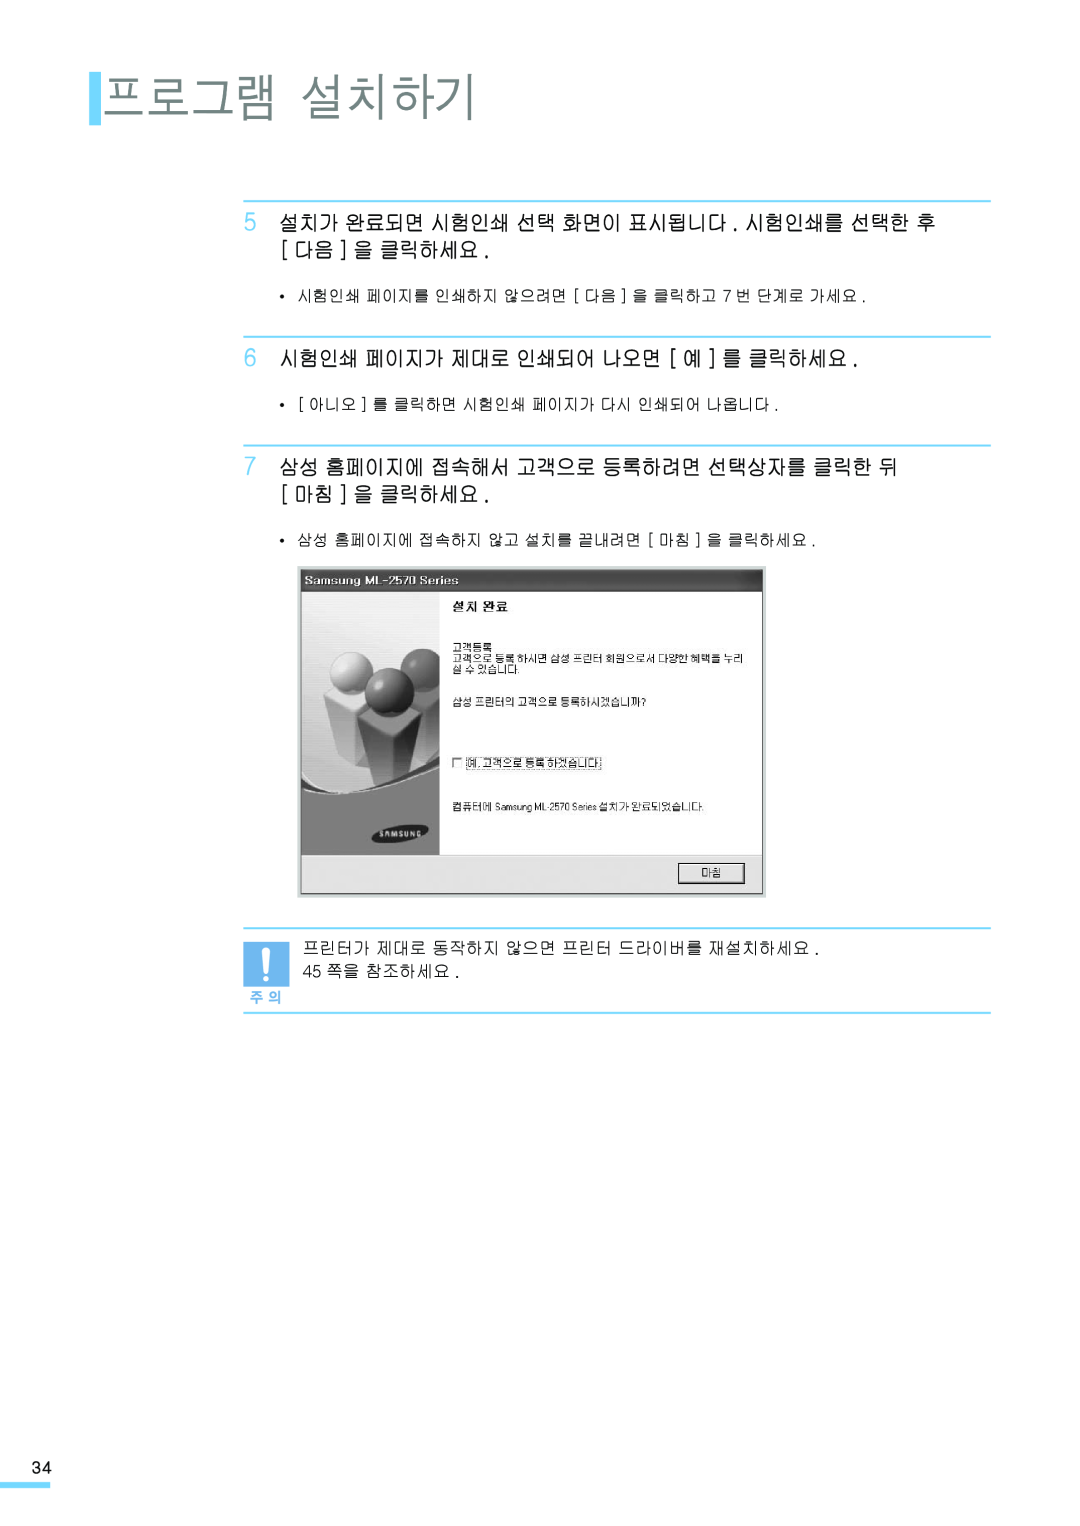 Samsung ML-2571N 프로그램 설치하기, 5 설치가 완료되면 시험인쇄 선택 화면이 표시됩니다 . 시험인쇄를 선택한 후 다음 을 클릭하세요, 6 시험인쇄 페이지가 제대로 인쇄되어 나오면 예 를 클릭하세요 